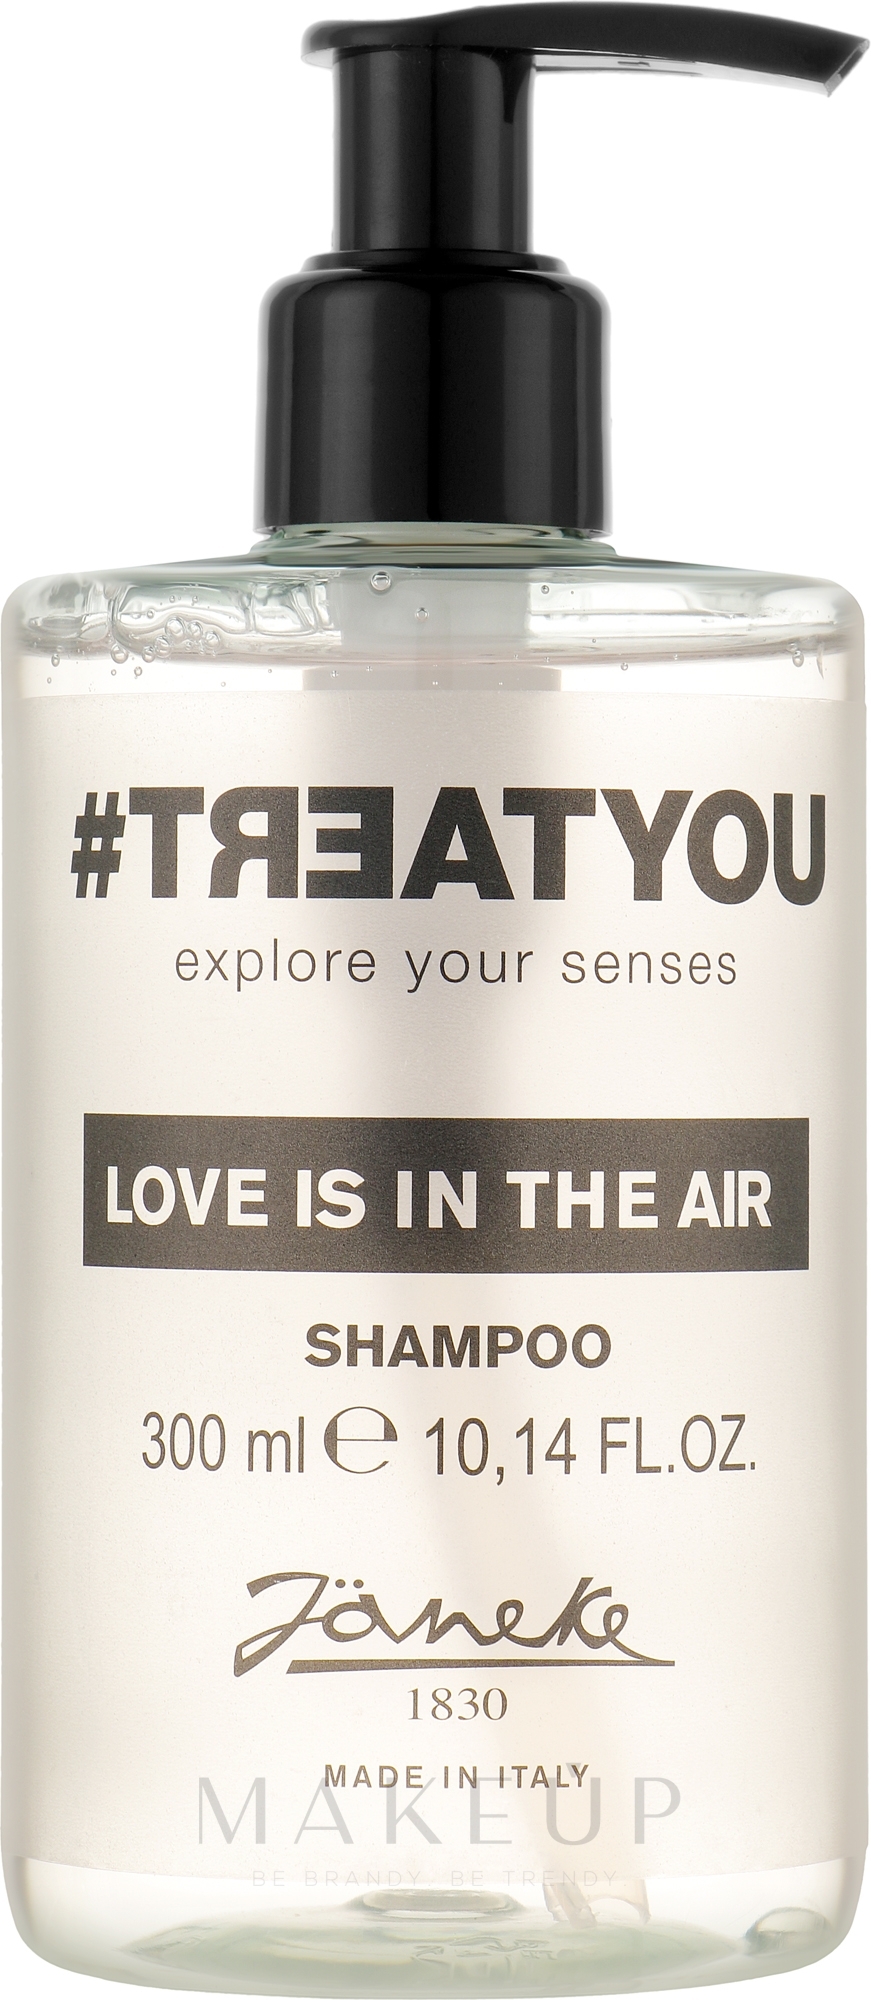 Shampoo - Janeke #Treatyou Love Is In The Air Shampoo — Bild 300 ml